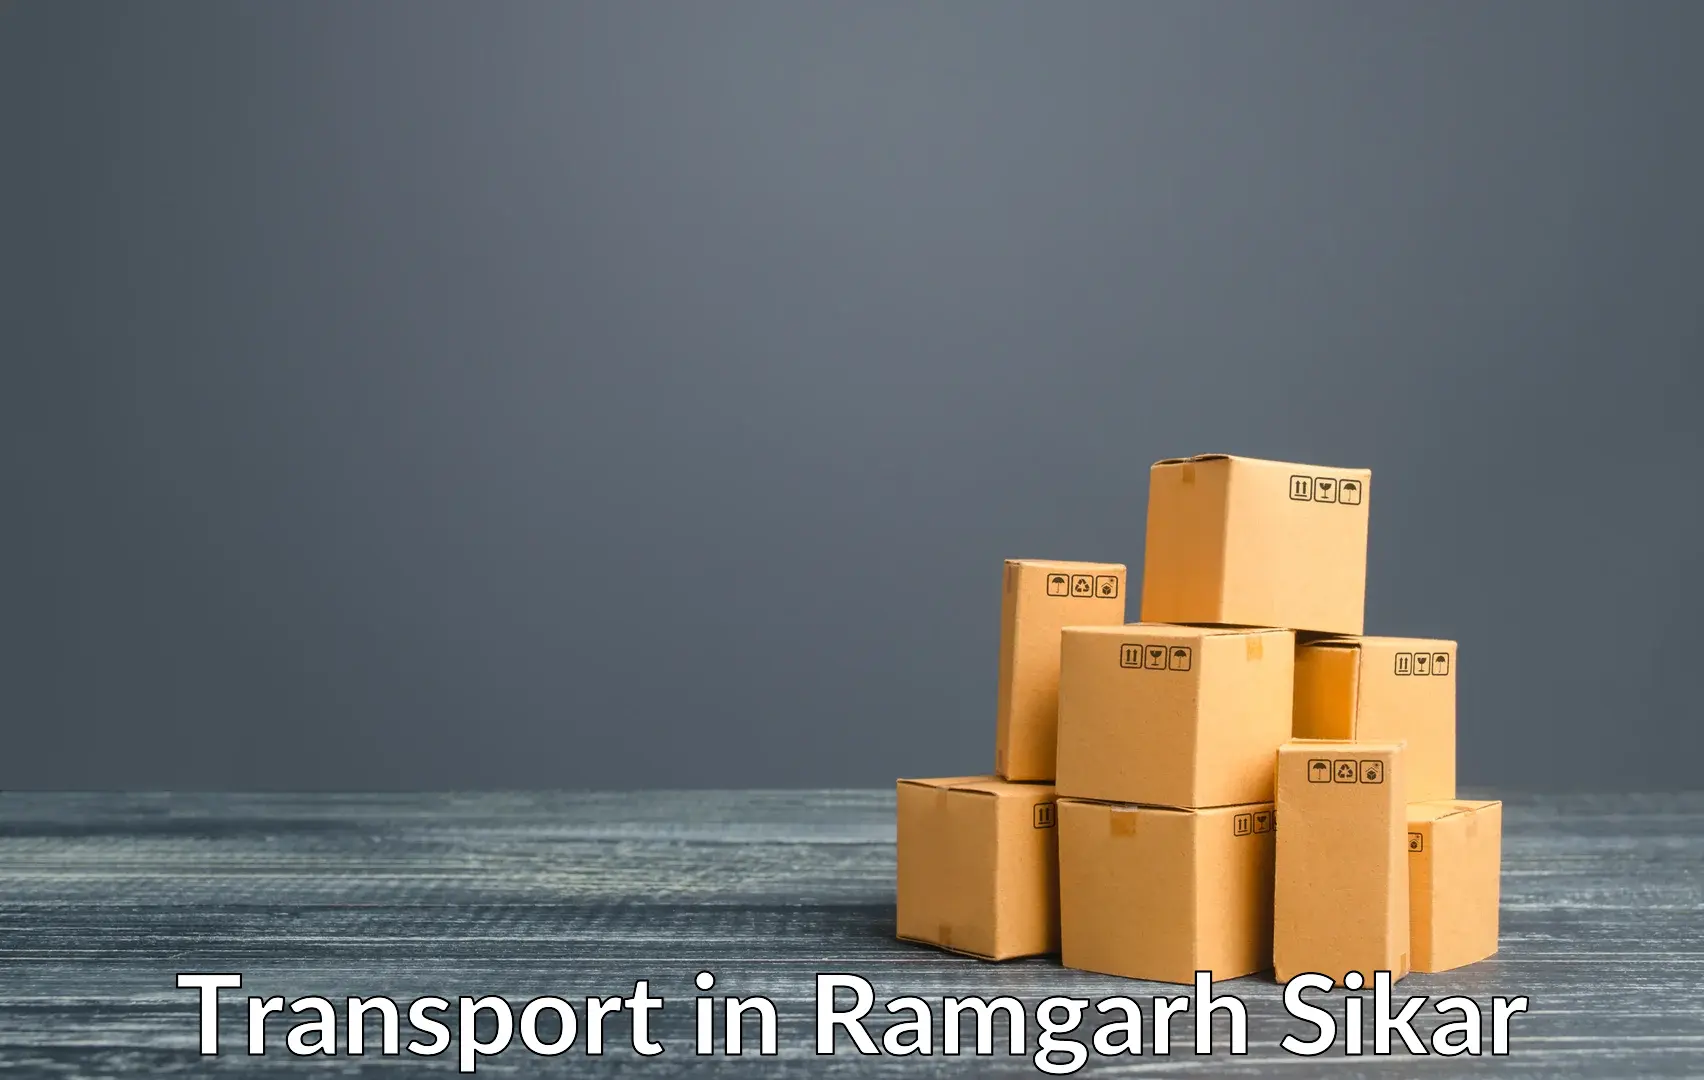 Cargo transportation services in Ramgarh Sikar